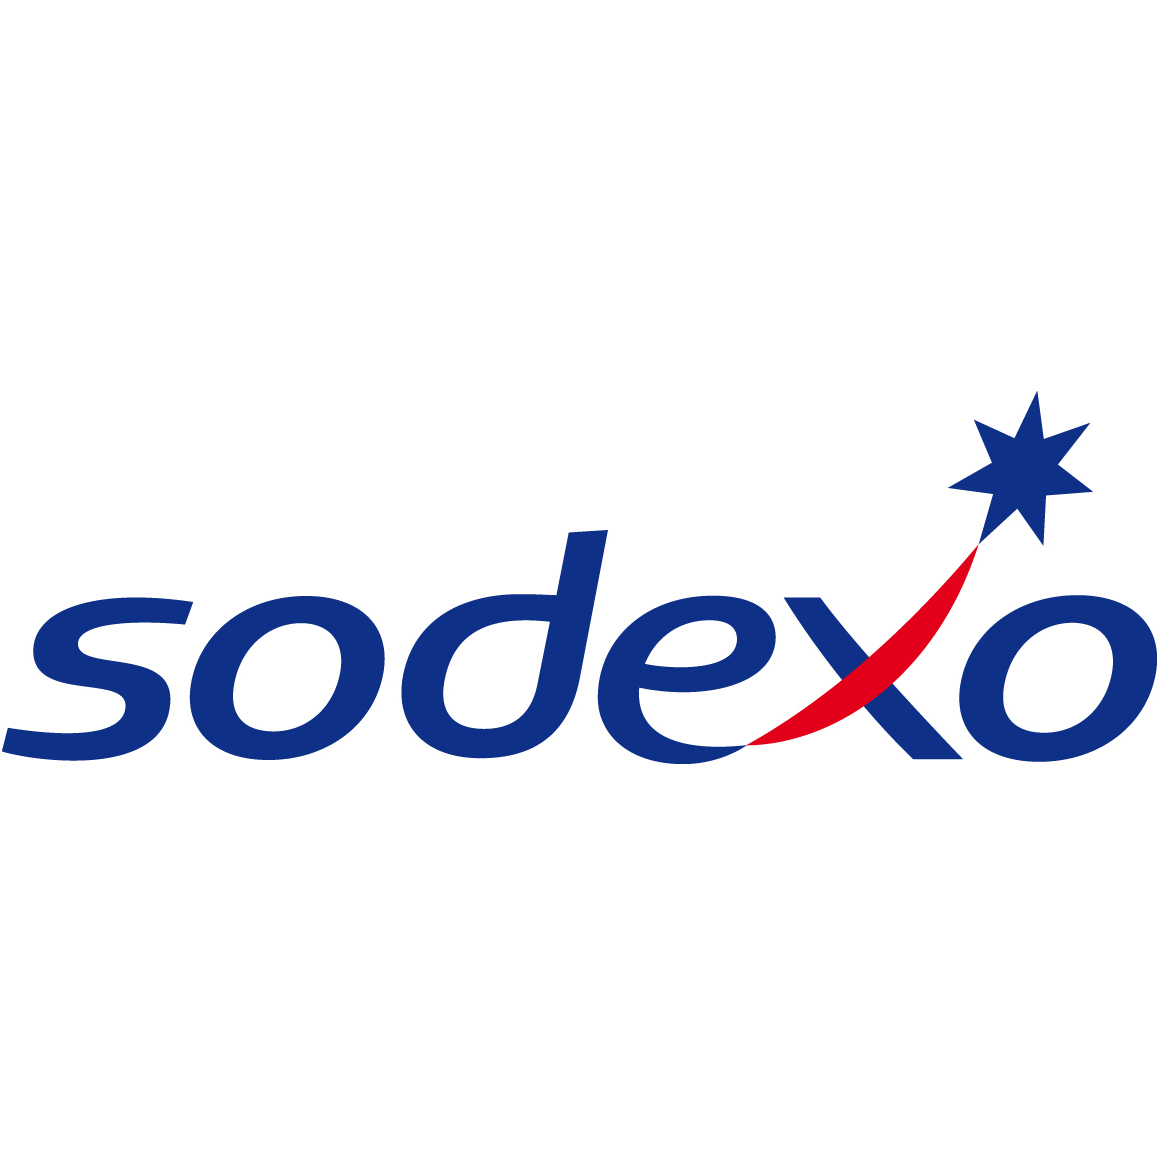 Sodexo_logo.jpg